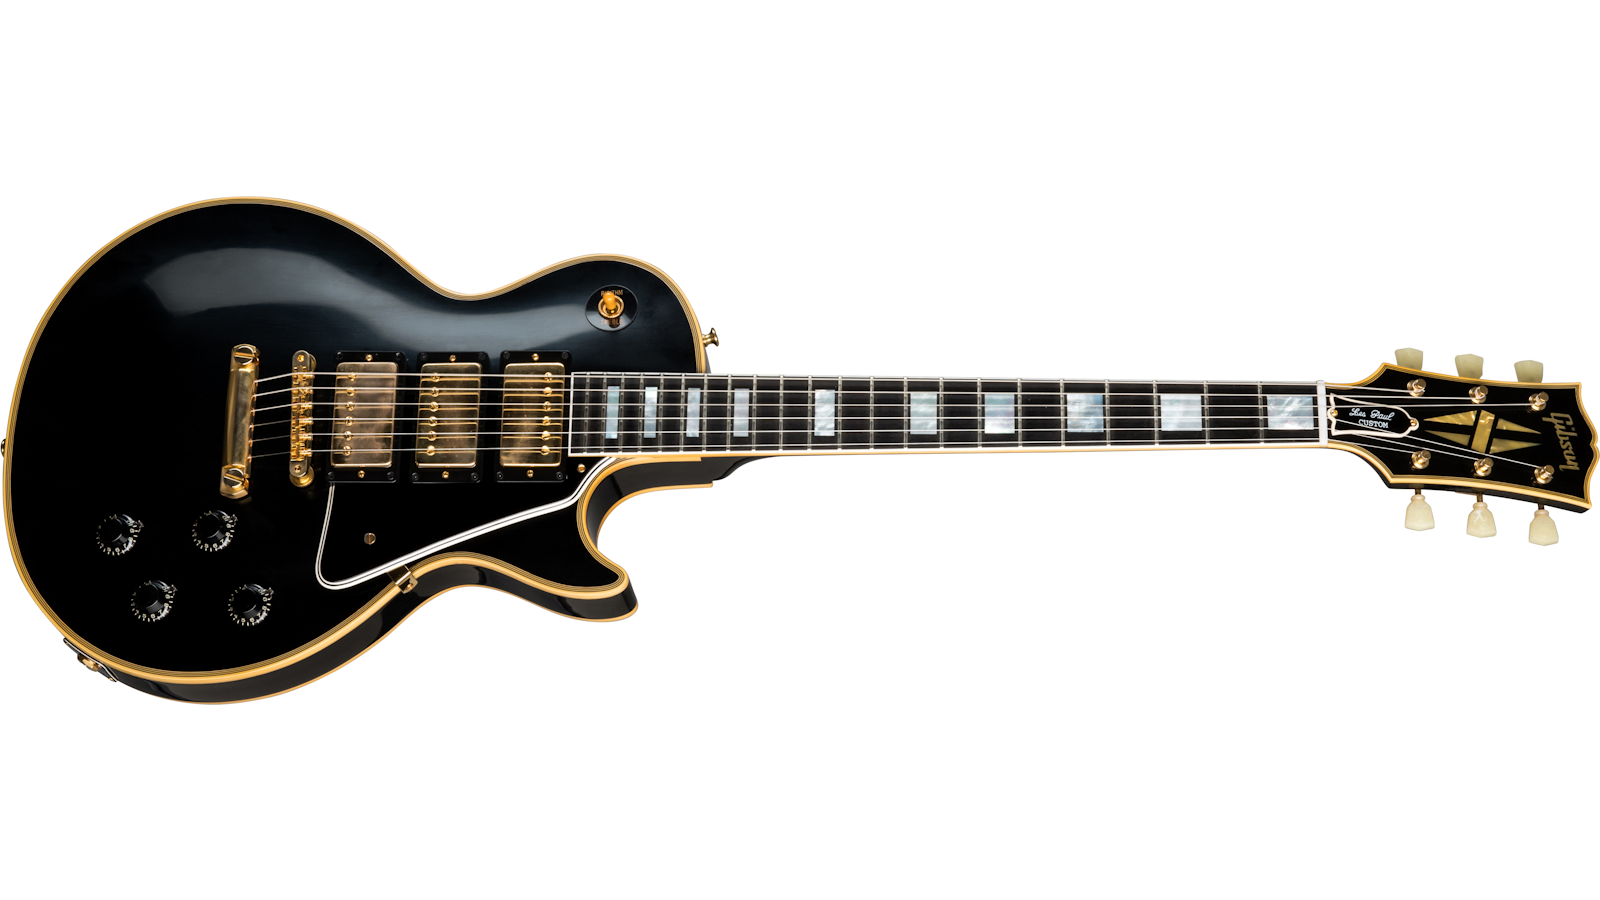 Gibson Les Paul Cutsom ギブソン レスポールカスタム-levercoffee.com